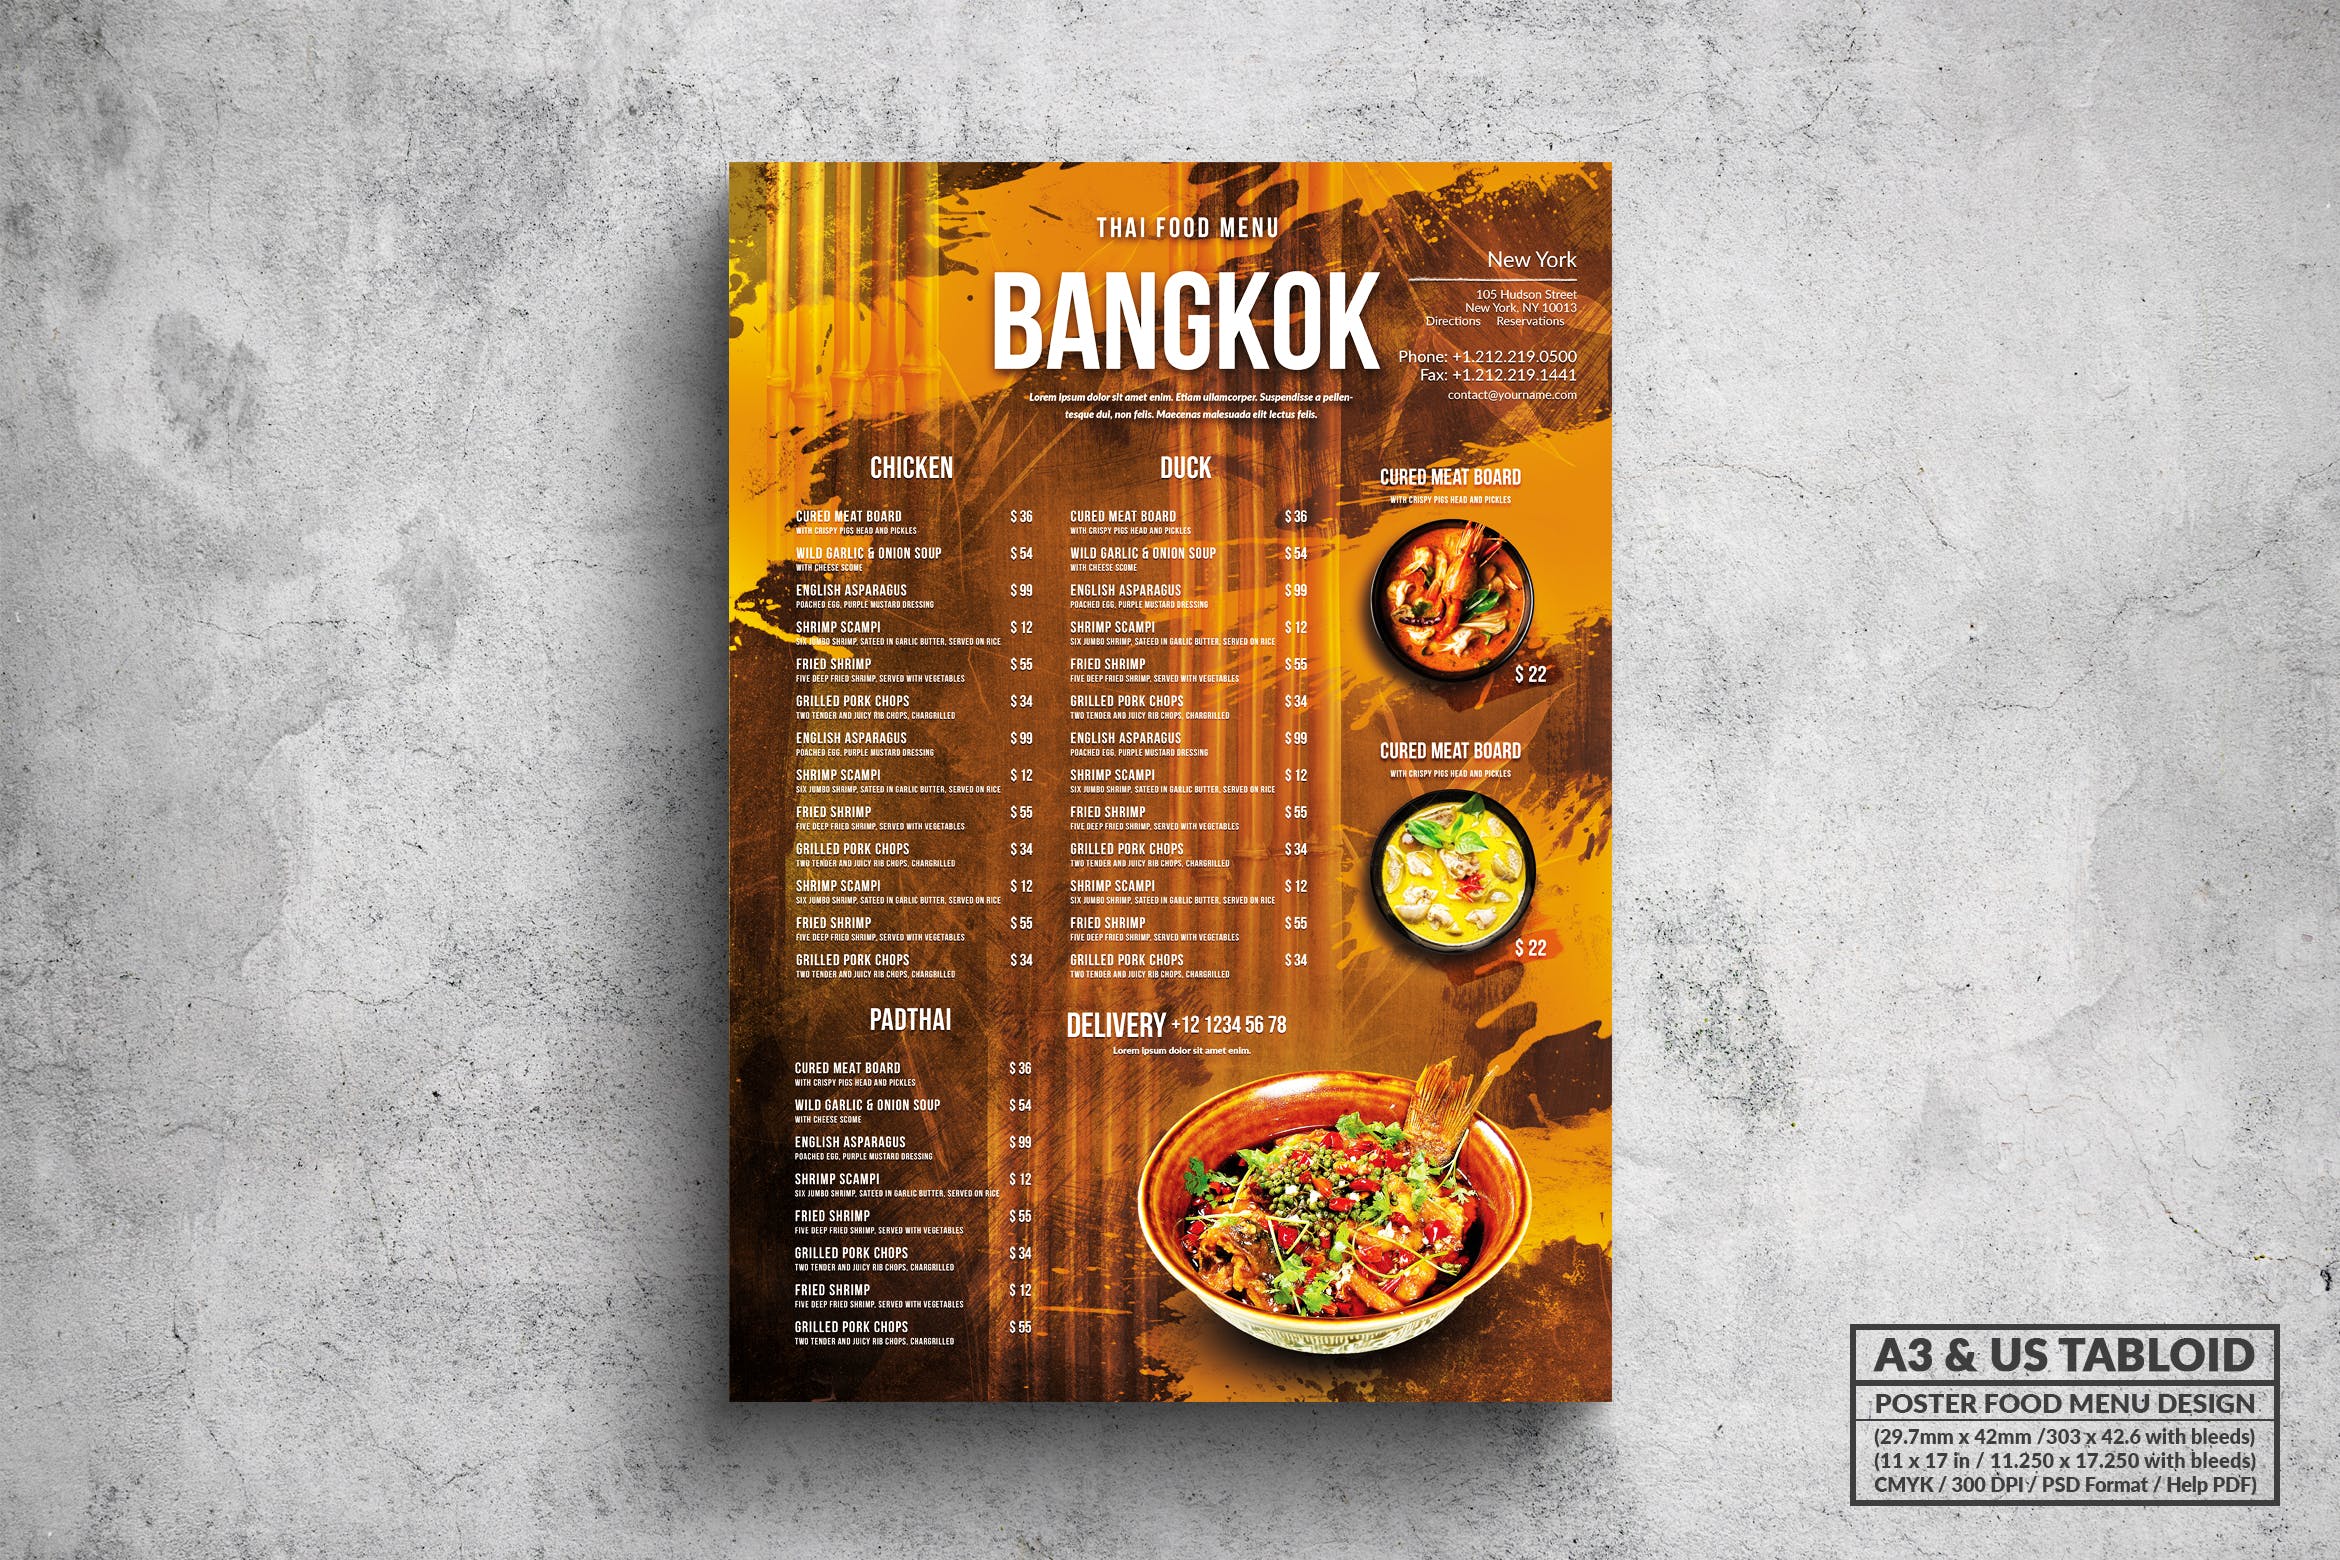 泰国菜餐厅菜单海报PSD素材素材库精选模板 Bangkok Thai Food Menu – A3 & US Tabloid Poster插图